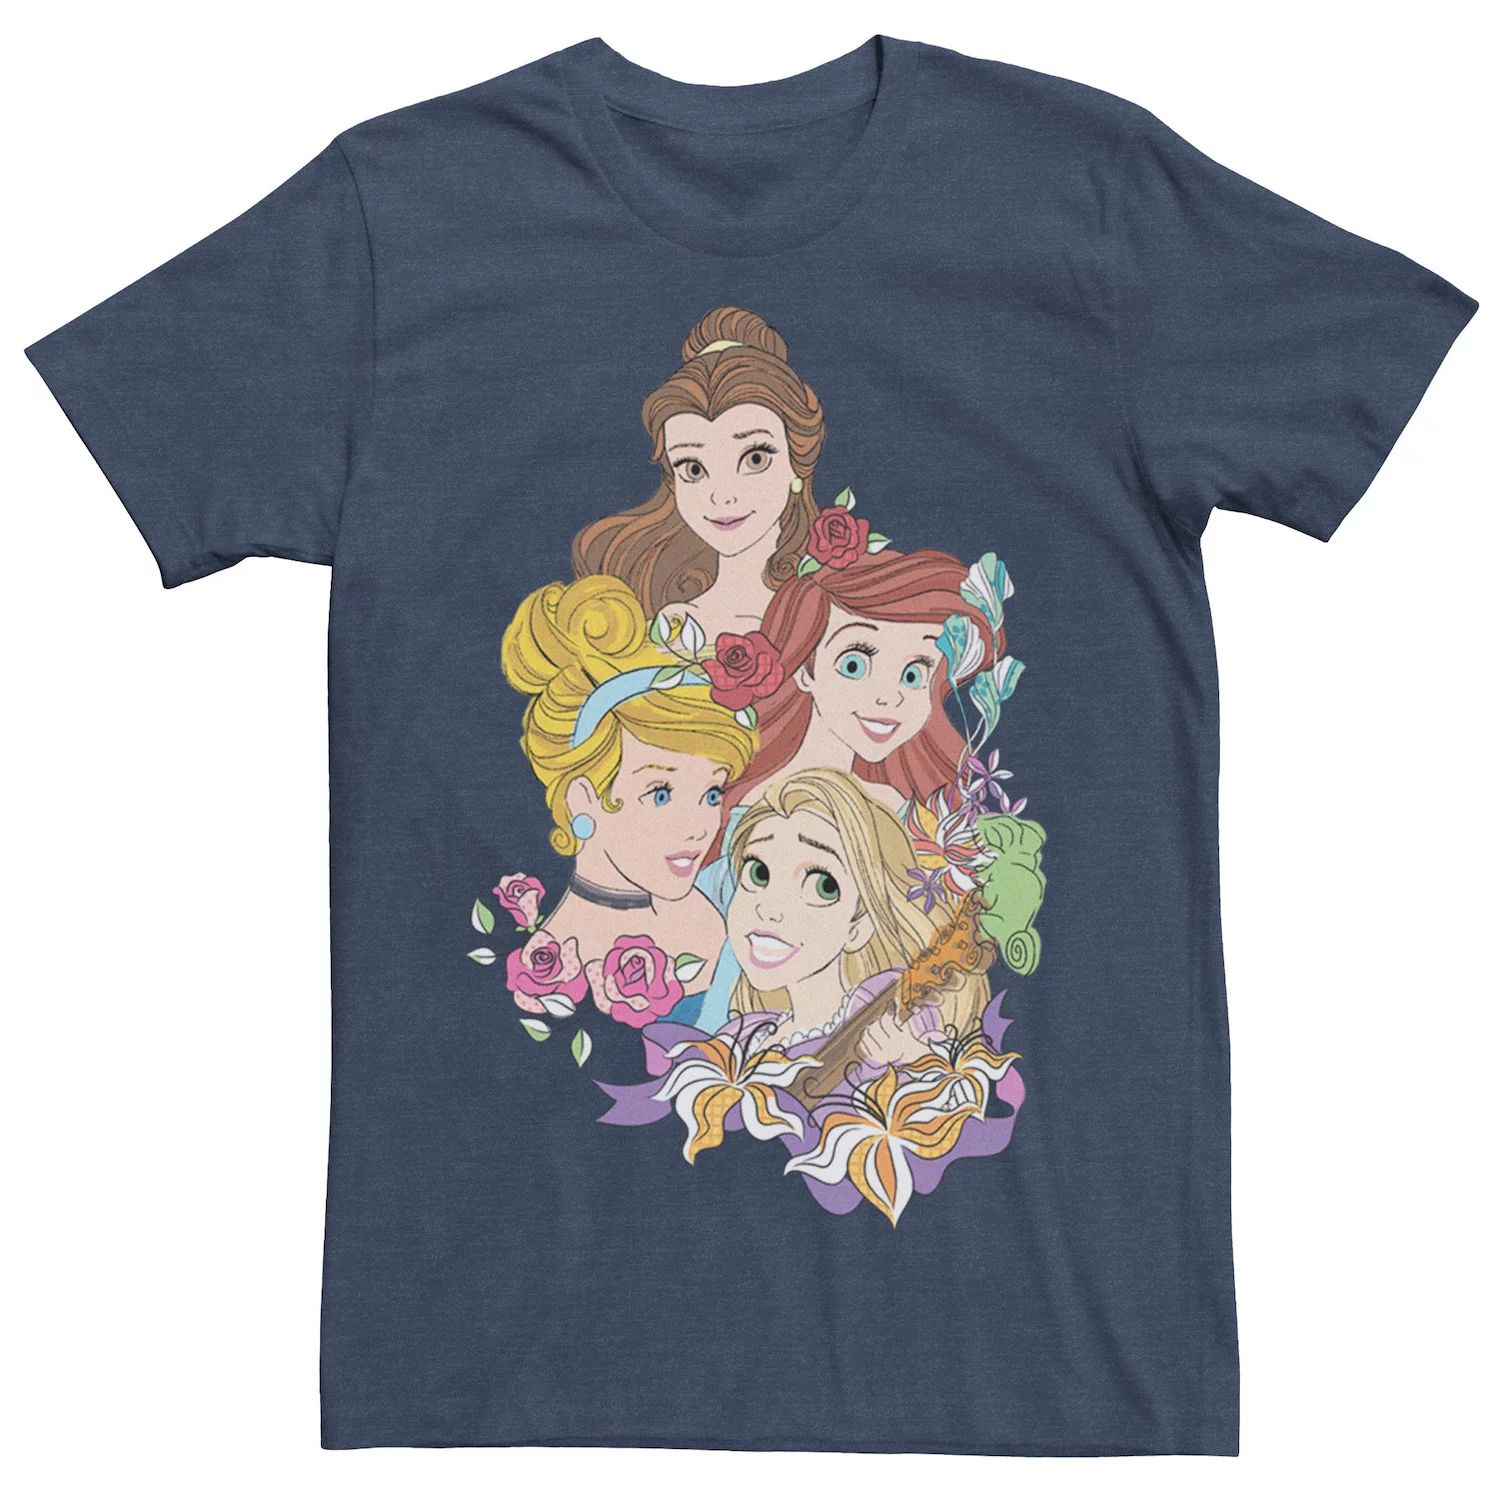 Мужская футболка Disney Princess с цветочным принтом Belle Cinderella Ariel Rapunzel Licensed Character